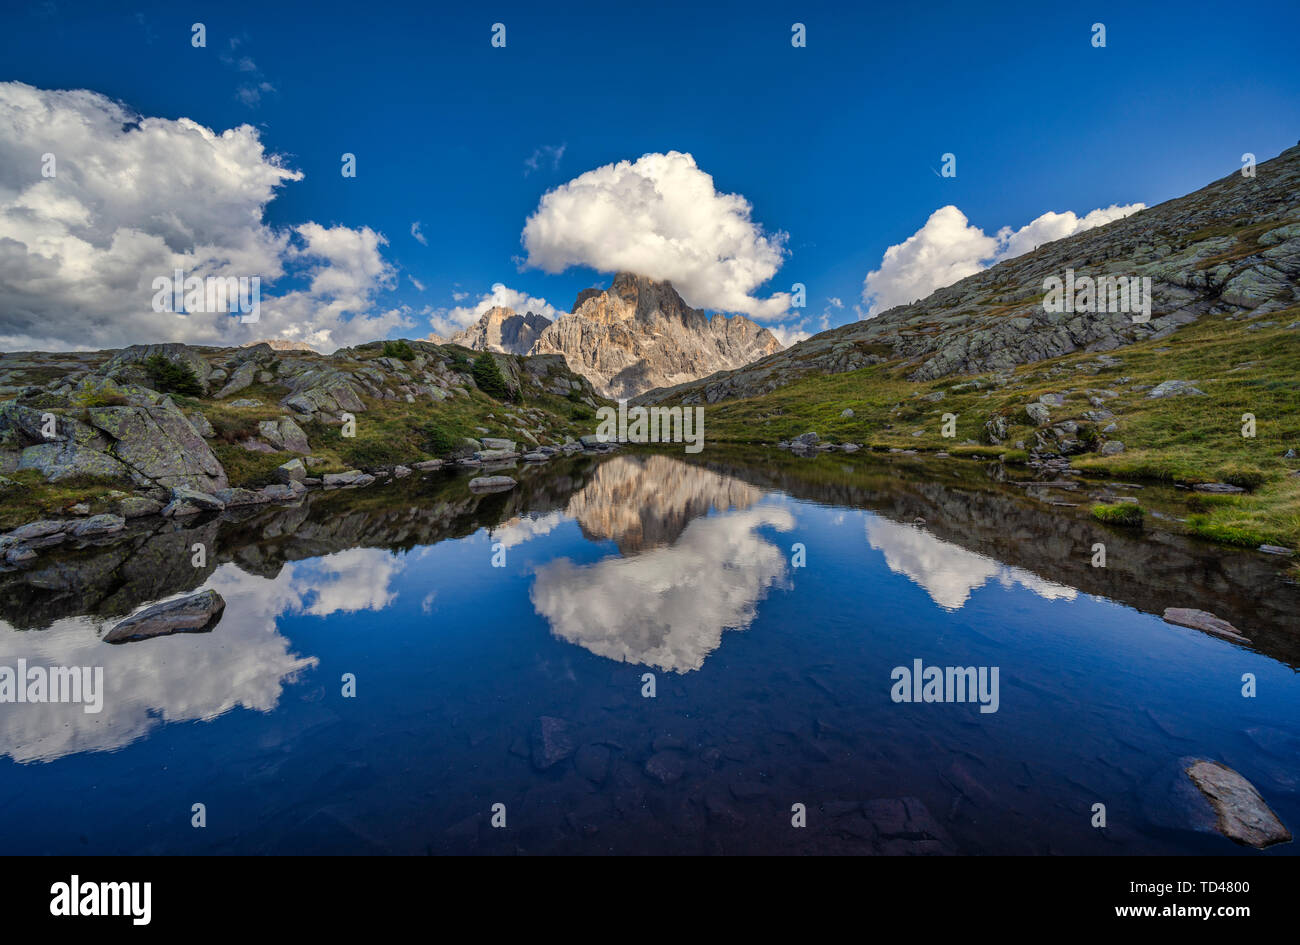 Pase de Rolle, Cimon de la pala se refleja en un pequeño lago, dolomitas, Véneto, Italia, Europa Foto de stock